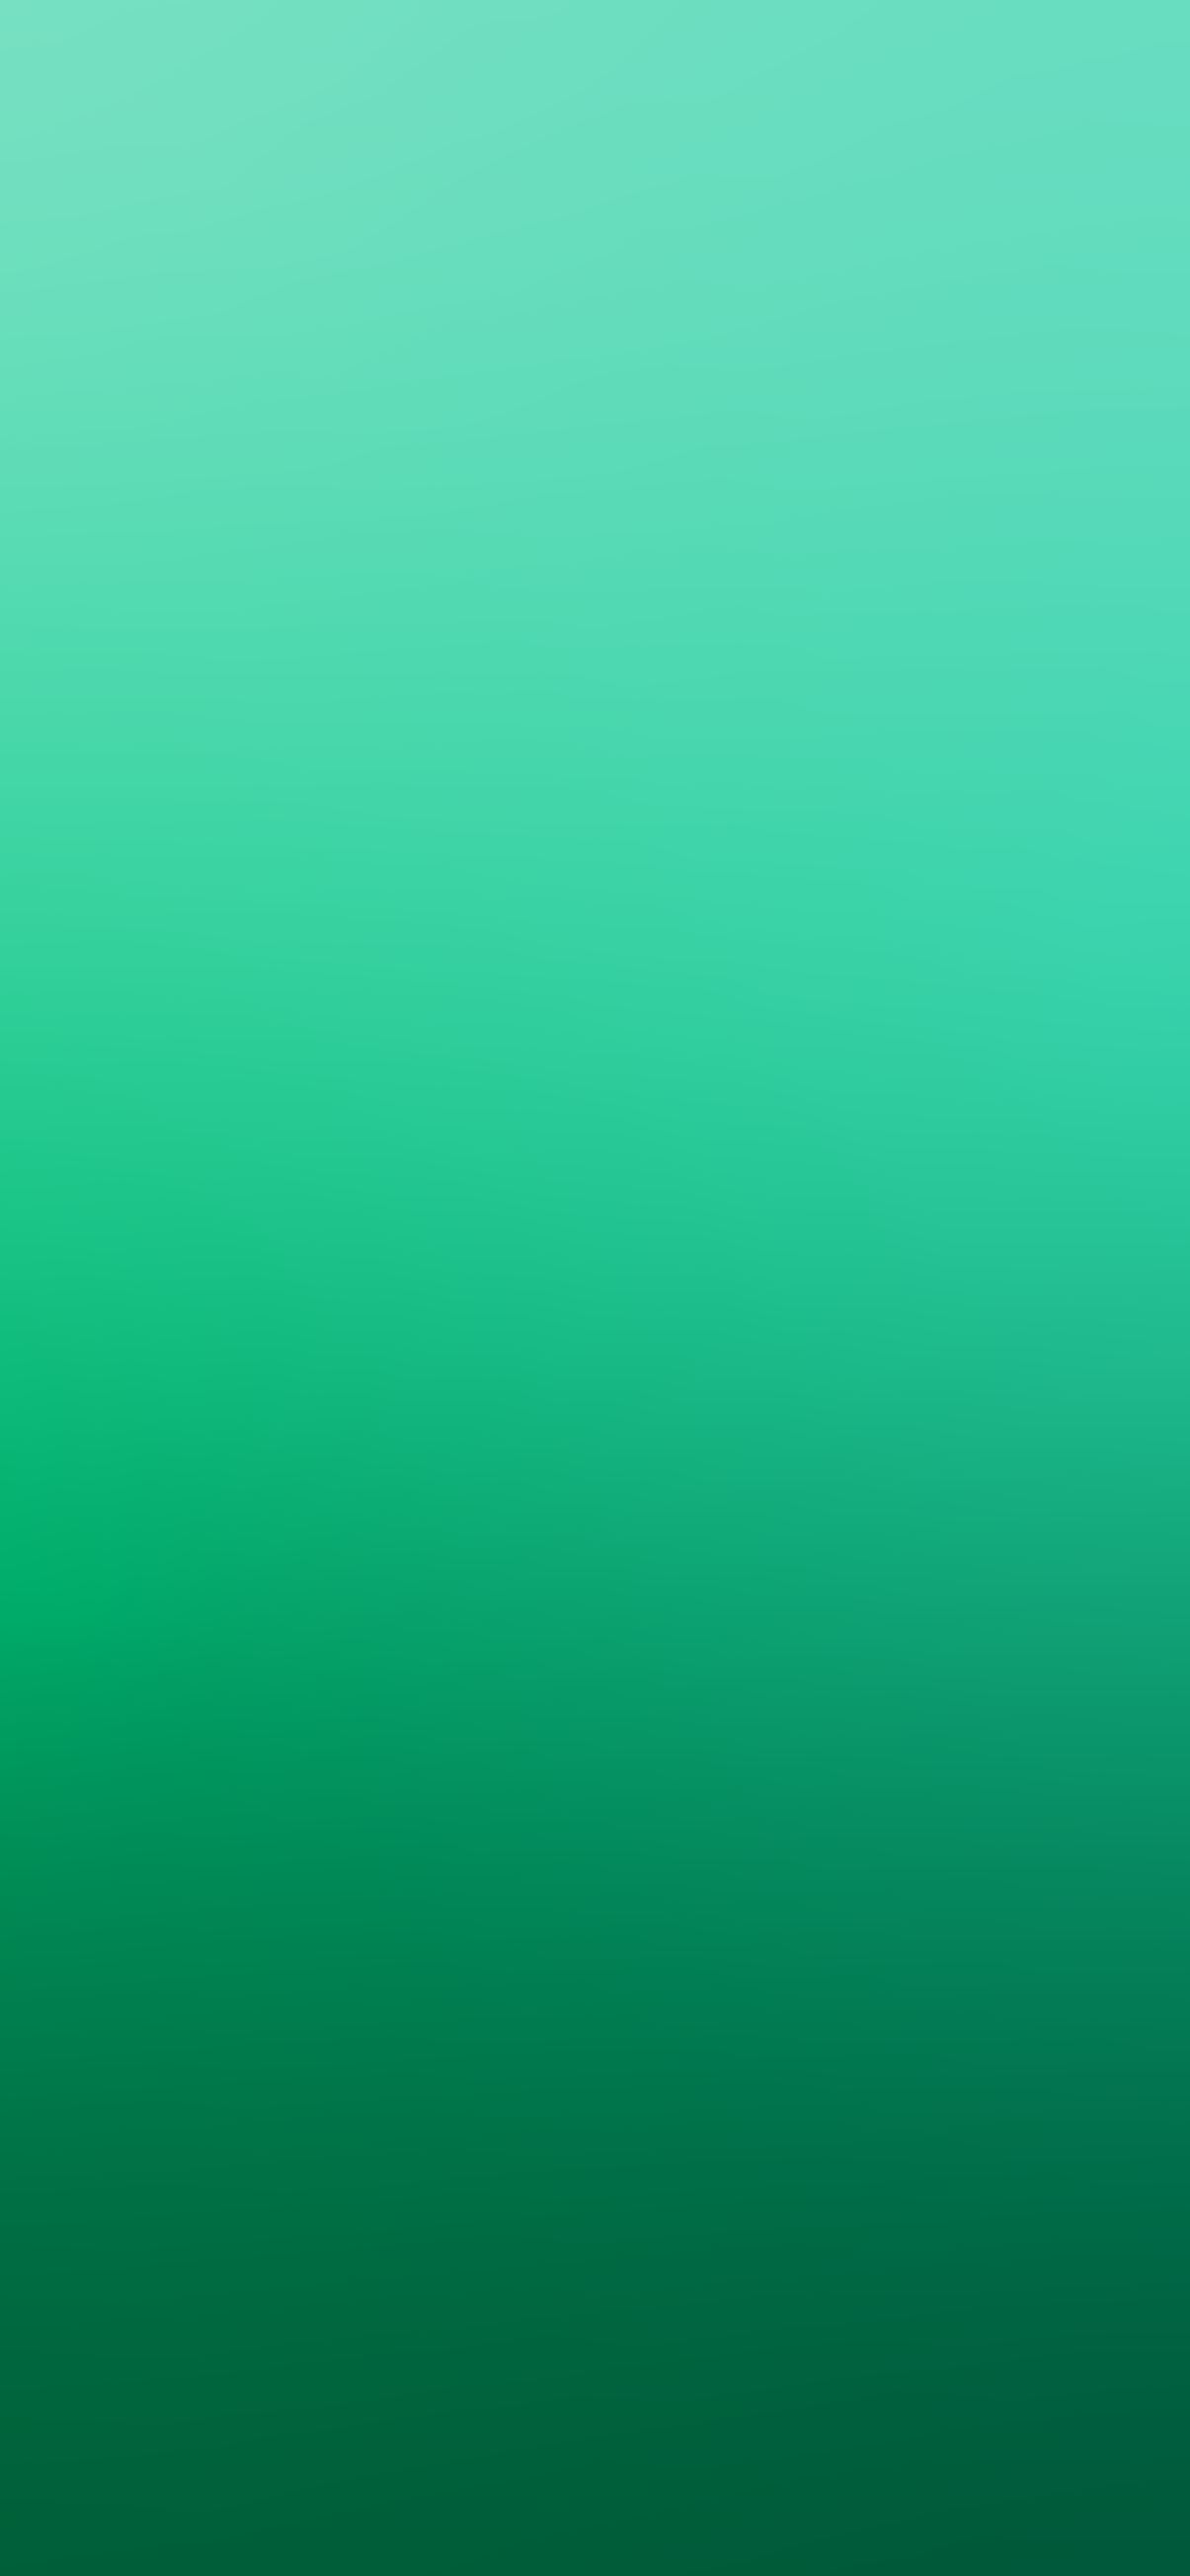 Nền đơn gradient màu xanh lá cây đơn giản là lựa chọn hoàn hảo cho những ai yêu thích sự sang trọng và tinh tế. Với một sắc màu duy nhất và một diện tích không gian trống khá rộng, hình nền này sẽ giúp cho màn hình của bạn trở nên tinh khiết và thanh thoát hơn. Nếu bạn đang tìm kiếm một lựa chọn hình nền đơn giản và đẹp mắt cho iPhone của mình, đừng bỏ lỡ hình nền gradient màu xanh lá cây đơn giản này! 